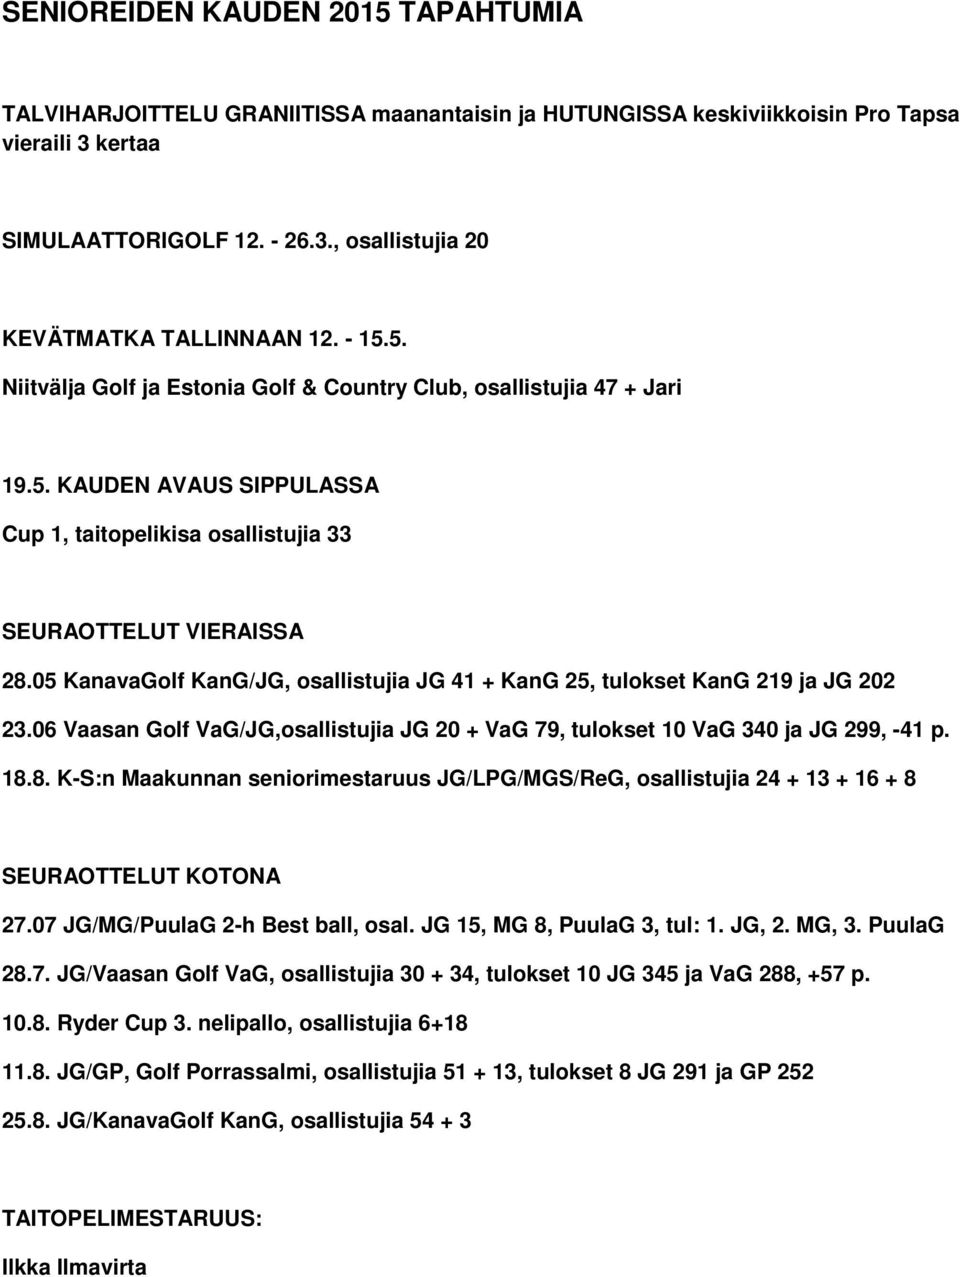 05 KanavaGolf KanG/JG, osallistujia JG 41 + KanG 25, tulokset KanG 219 ja JG 202 23.06 Vaasan Golf VaG/JG,osallistujia JG 20 + VaG 79, tulokset 10 VaG 340 ja JG 299, -41 p. 18.